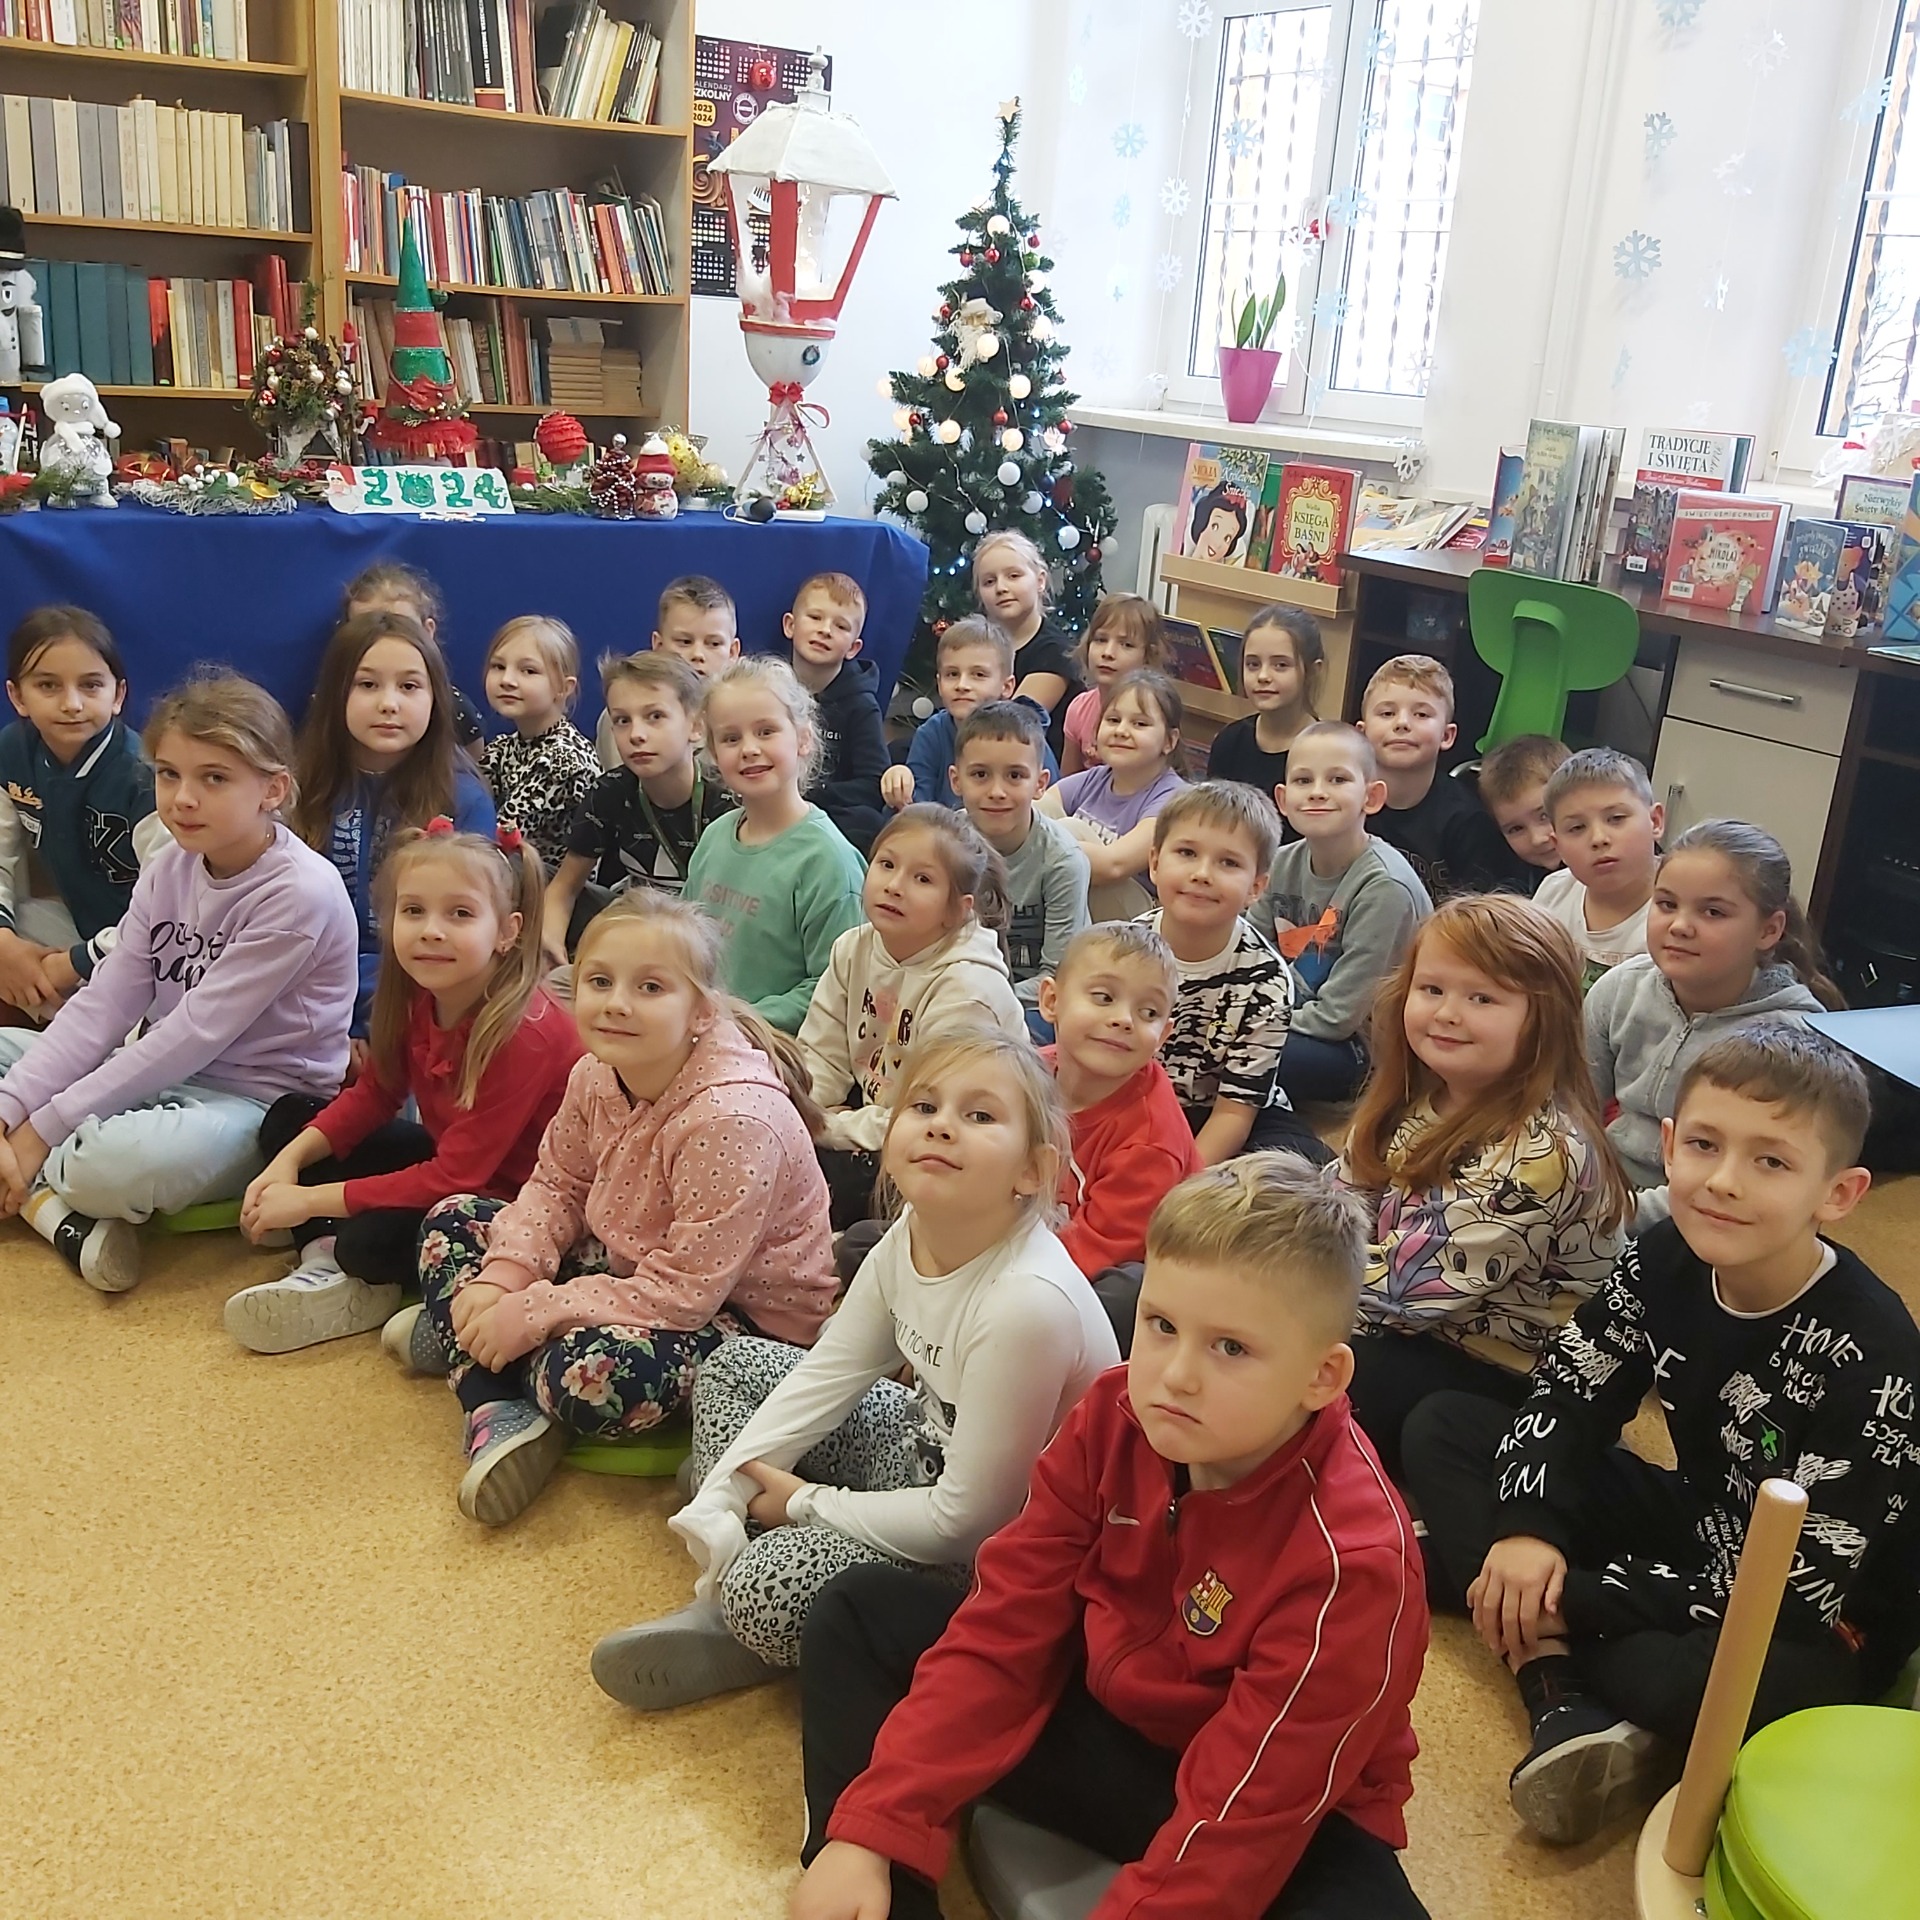 Uczniowie Szkoły Podstawowej Nr 2 im. M. Kopernika w Olecku - uczestnicy konkursu recytatorskiego "Miś"